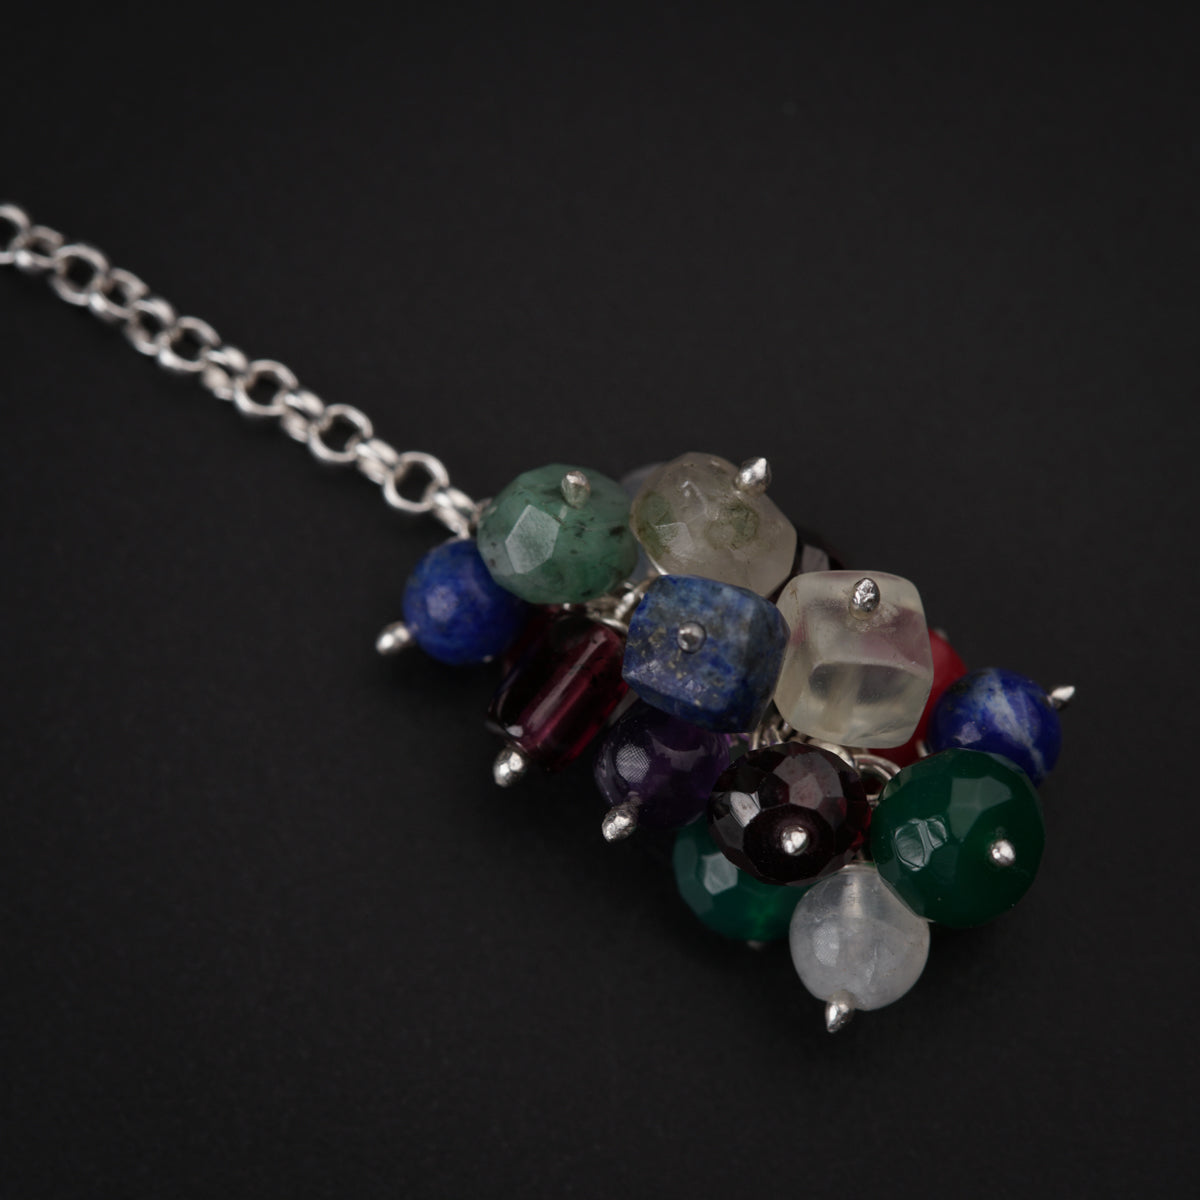 Silver Tie & Wear Necklace with Pearls & Semi Precious Stones